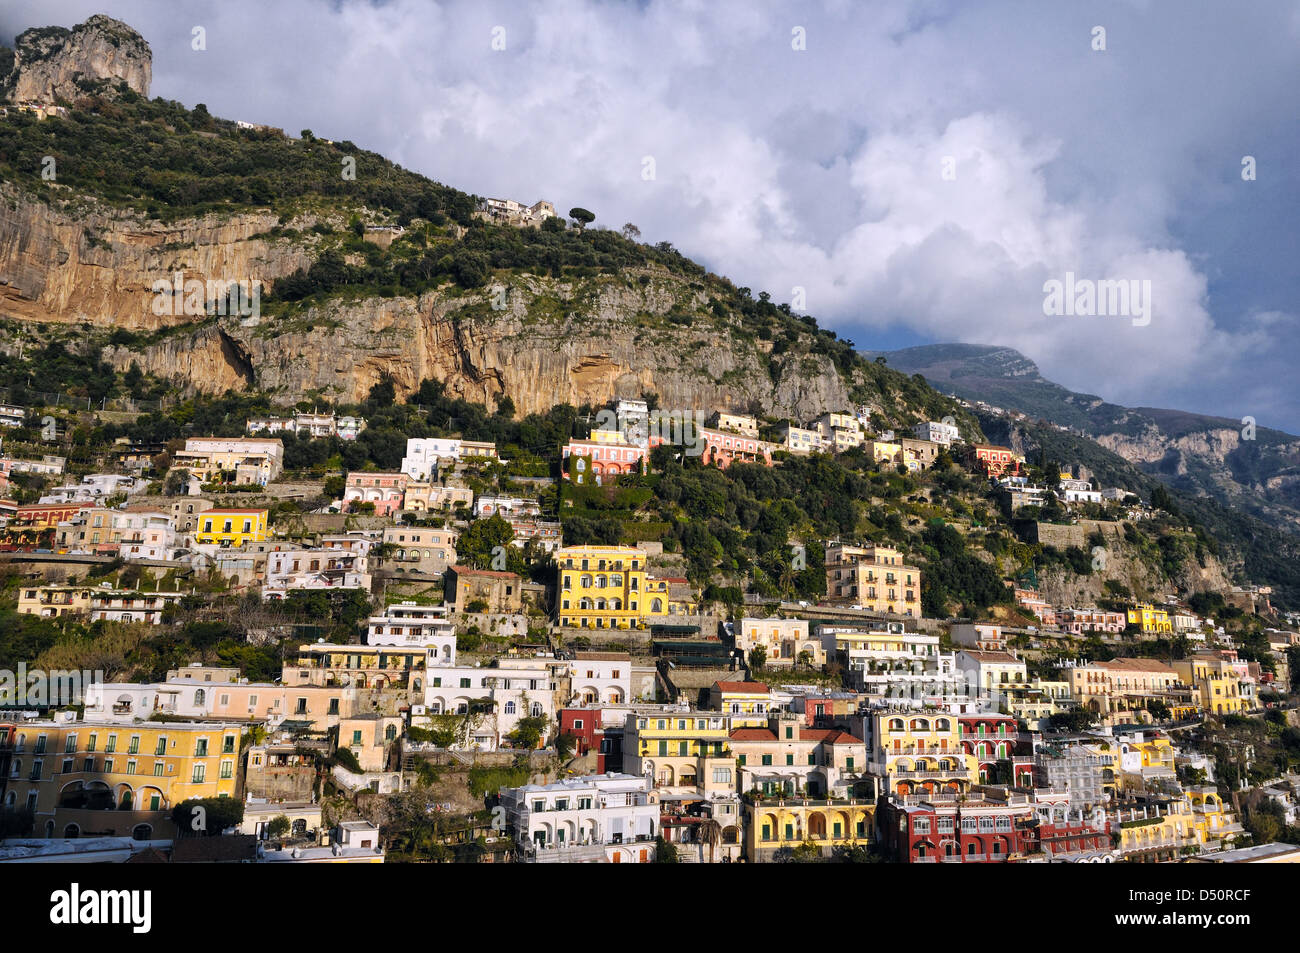 Costiera amalfitana Houses of Positano  Italy by andrea quercioli Stock Photo